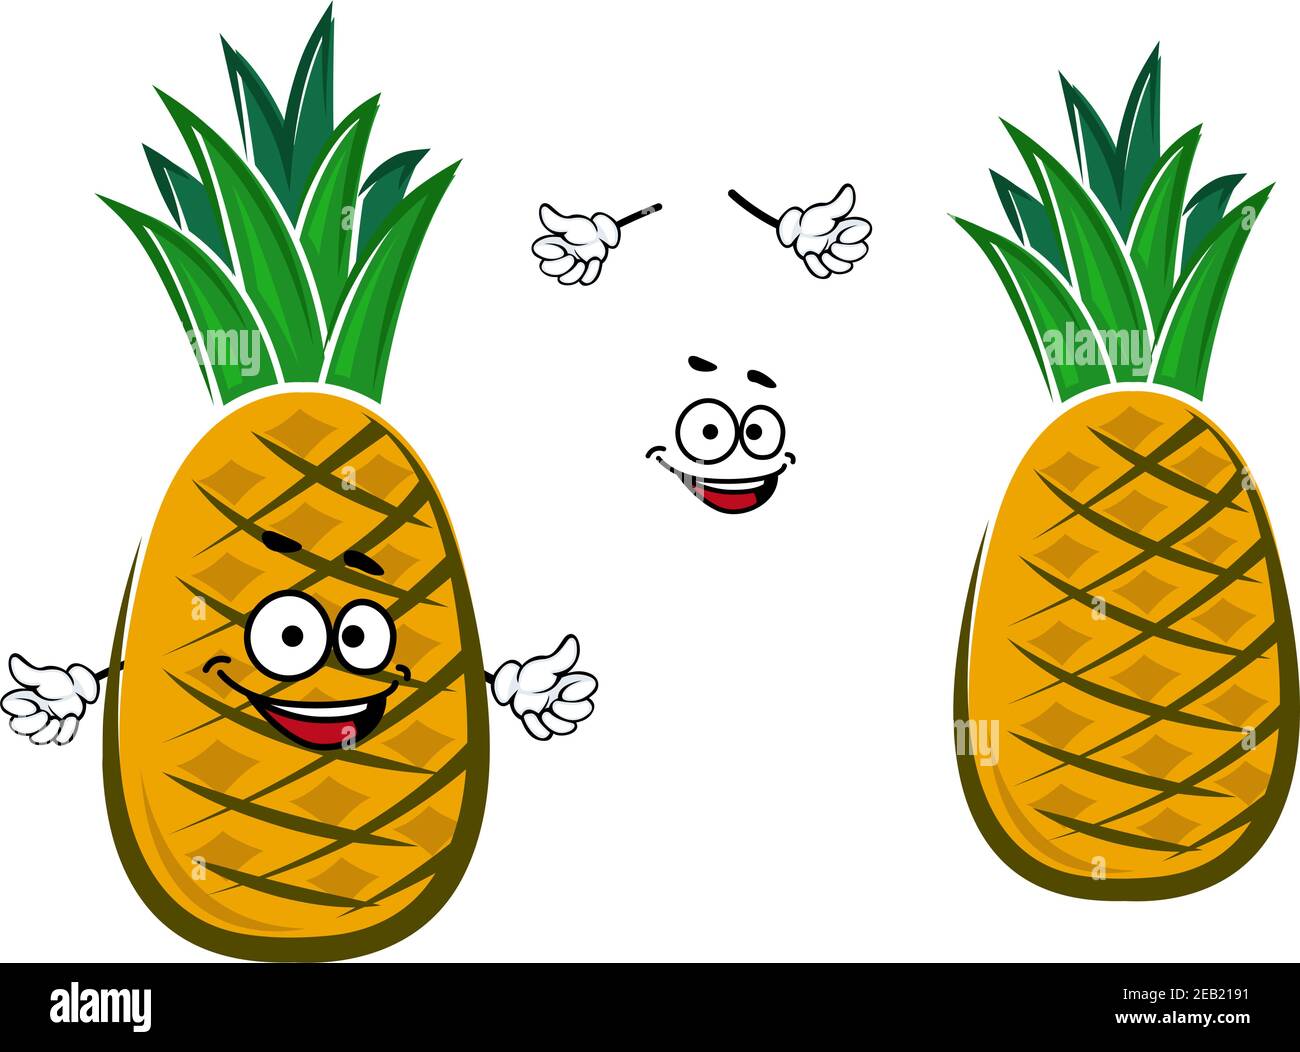 Reife Cartoon gelb tropische Ananas Frucht Charakter mit grünem Büschel Von kurzen engen Blättern auf der Oberseite für eine gesunde Ernährung Oder Dessert-Design Stock Vektor